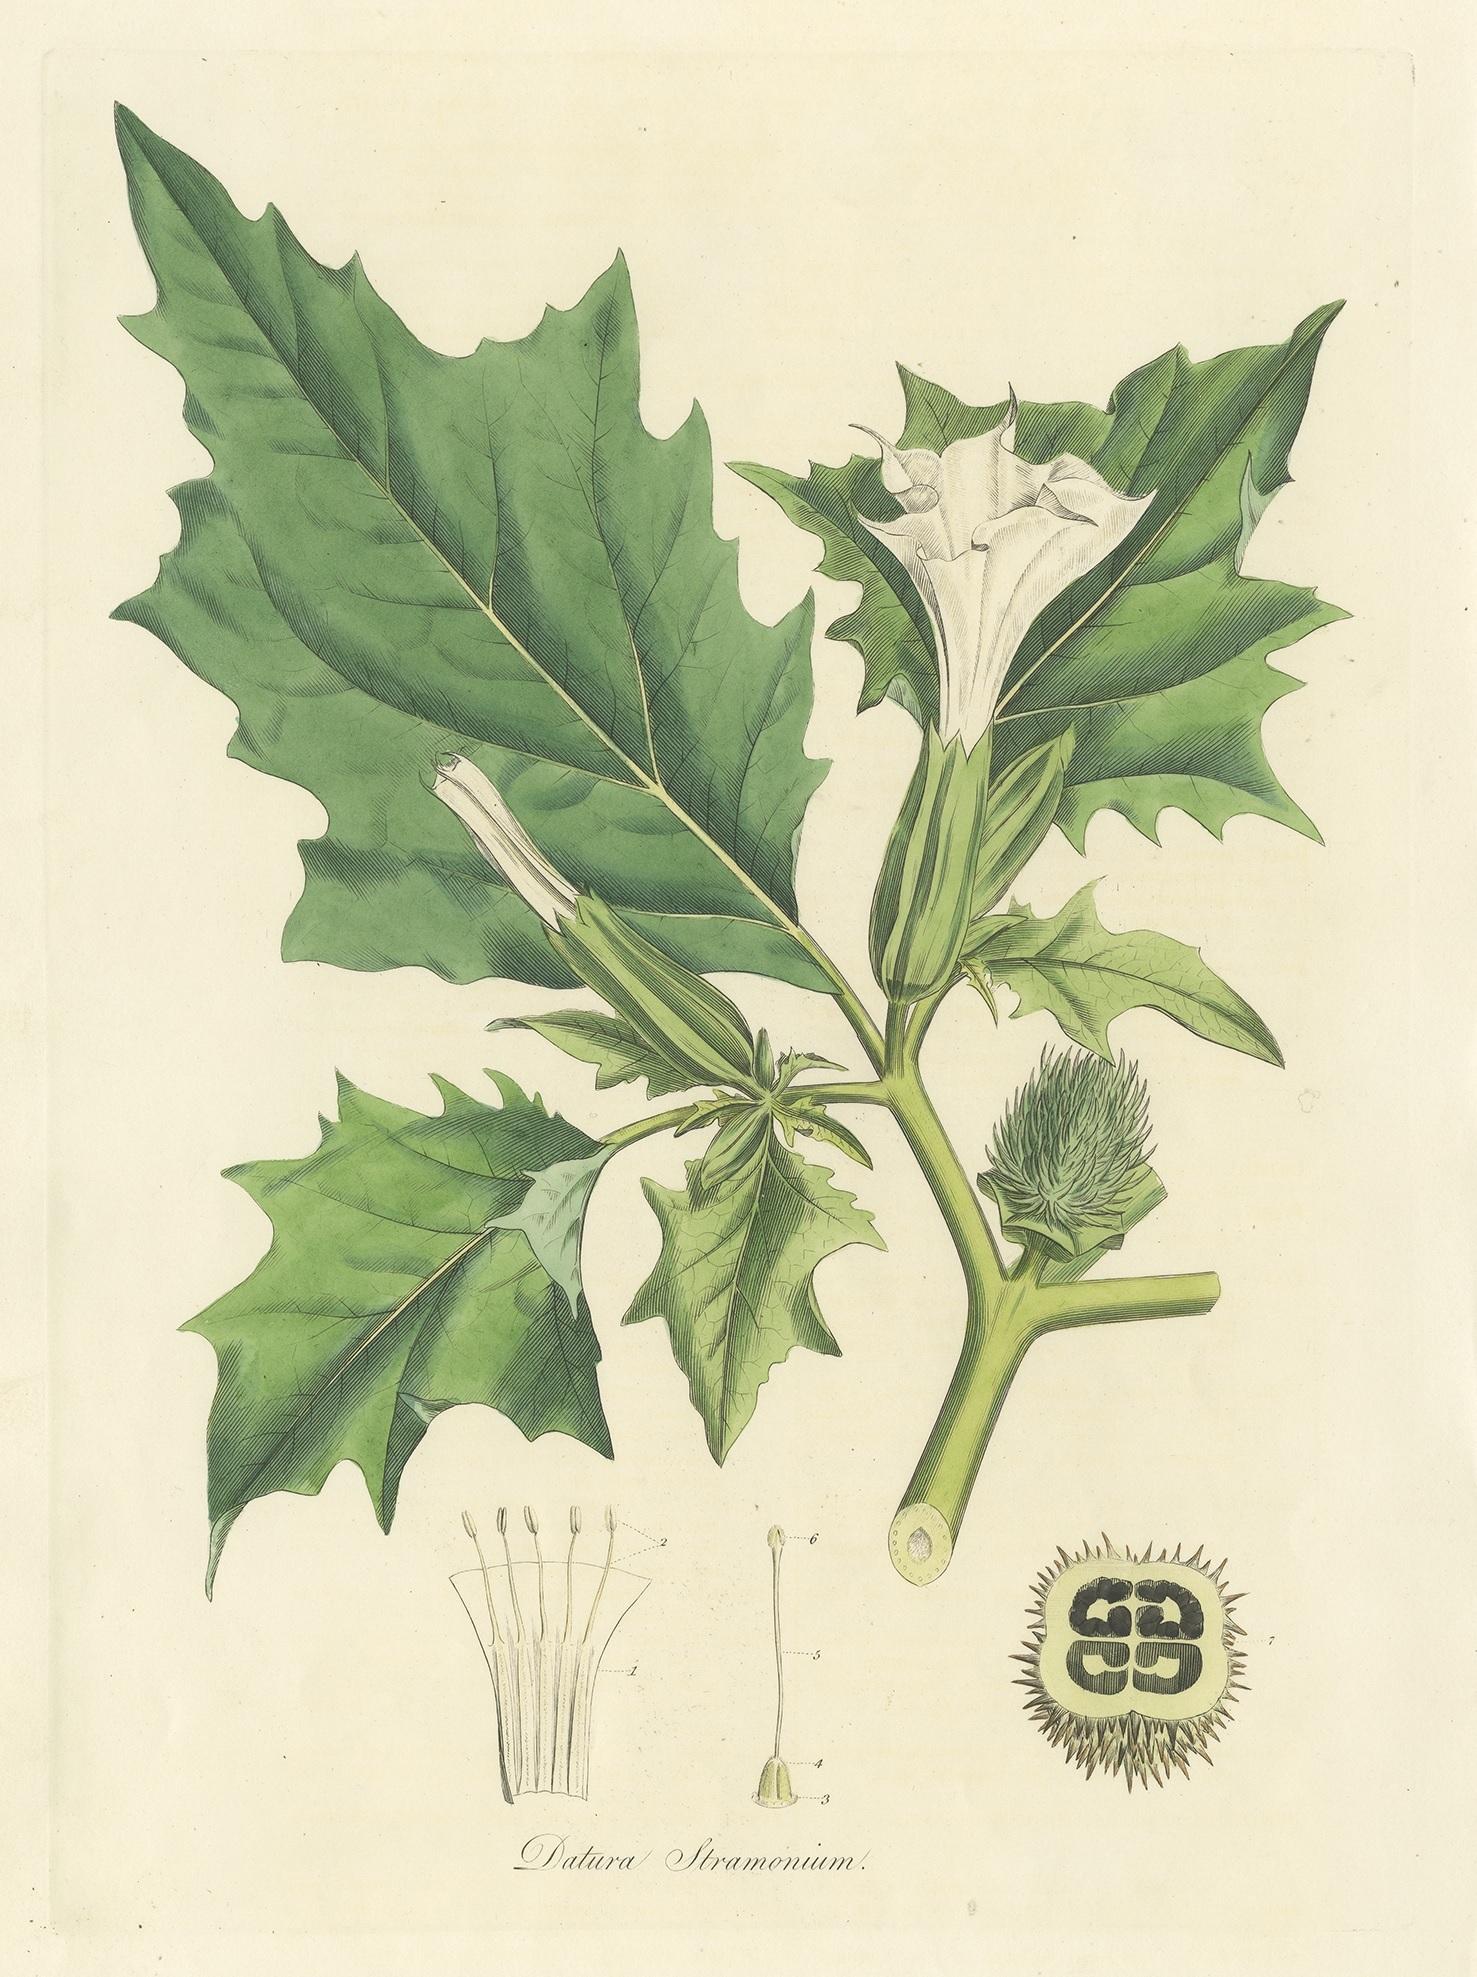 Gravure botanique ancienne intitulée 'Datura Stramonium'. Gravure coloriée à la main de datura stramonium, connue sous les noms de pomme d'épine, de jimsonweed (herbe de jimson) ou de collet du diable. Cette estampe provient de 'Flora Londinensis'